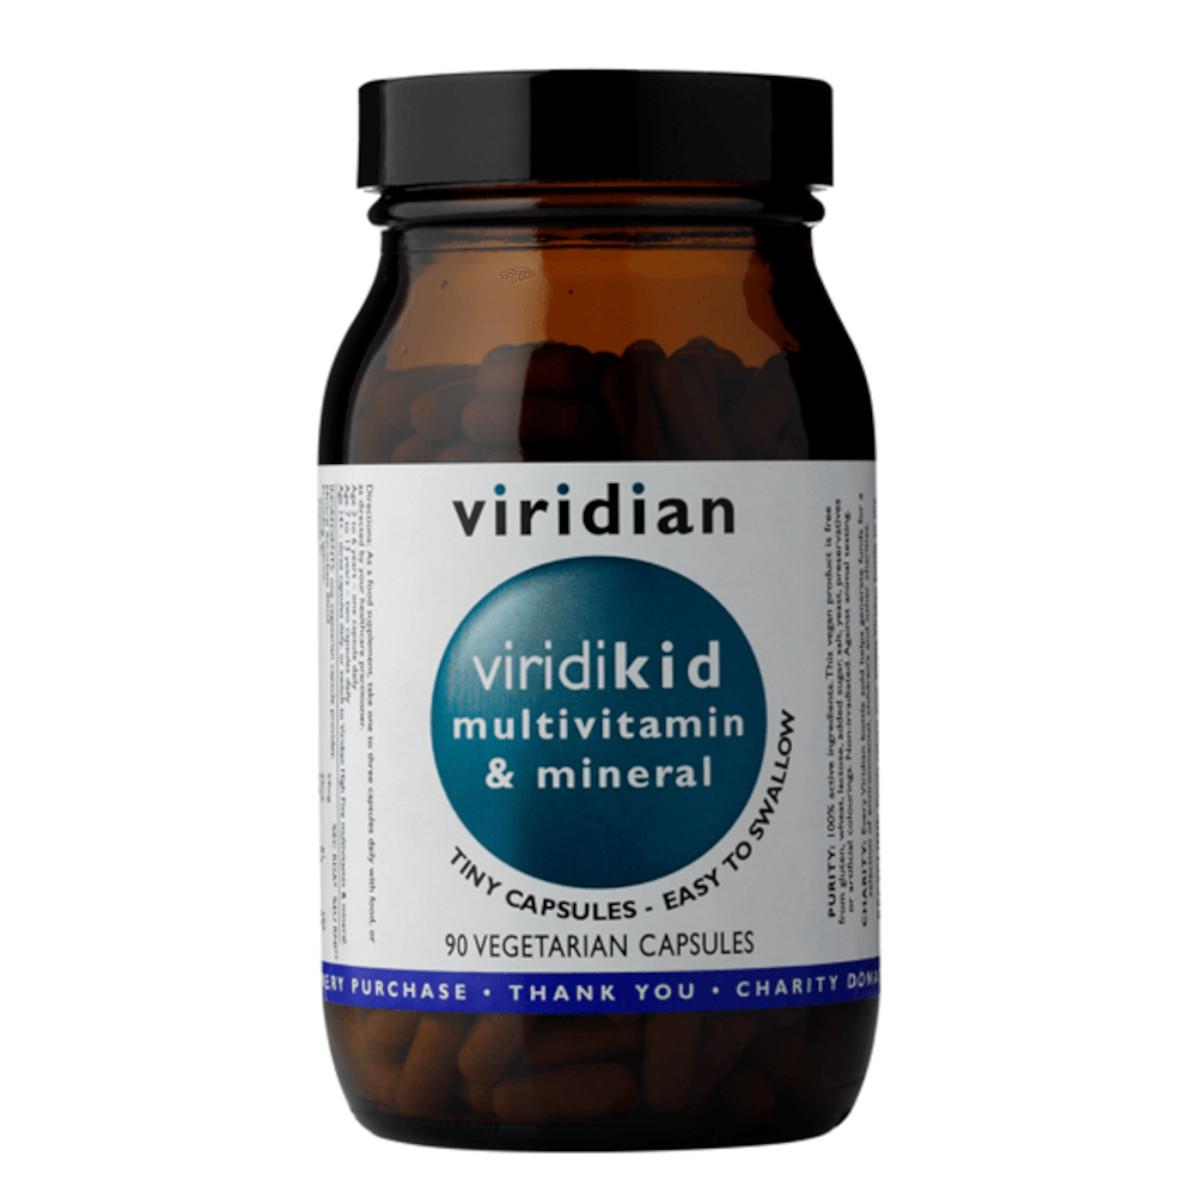 Viridian Viridikid Multivitamin, kapsle 90 ks